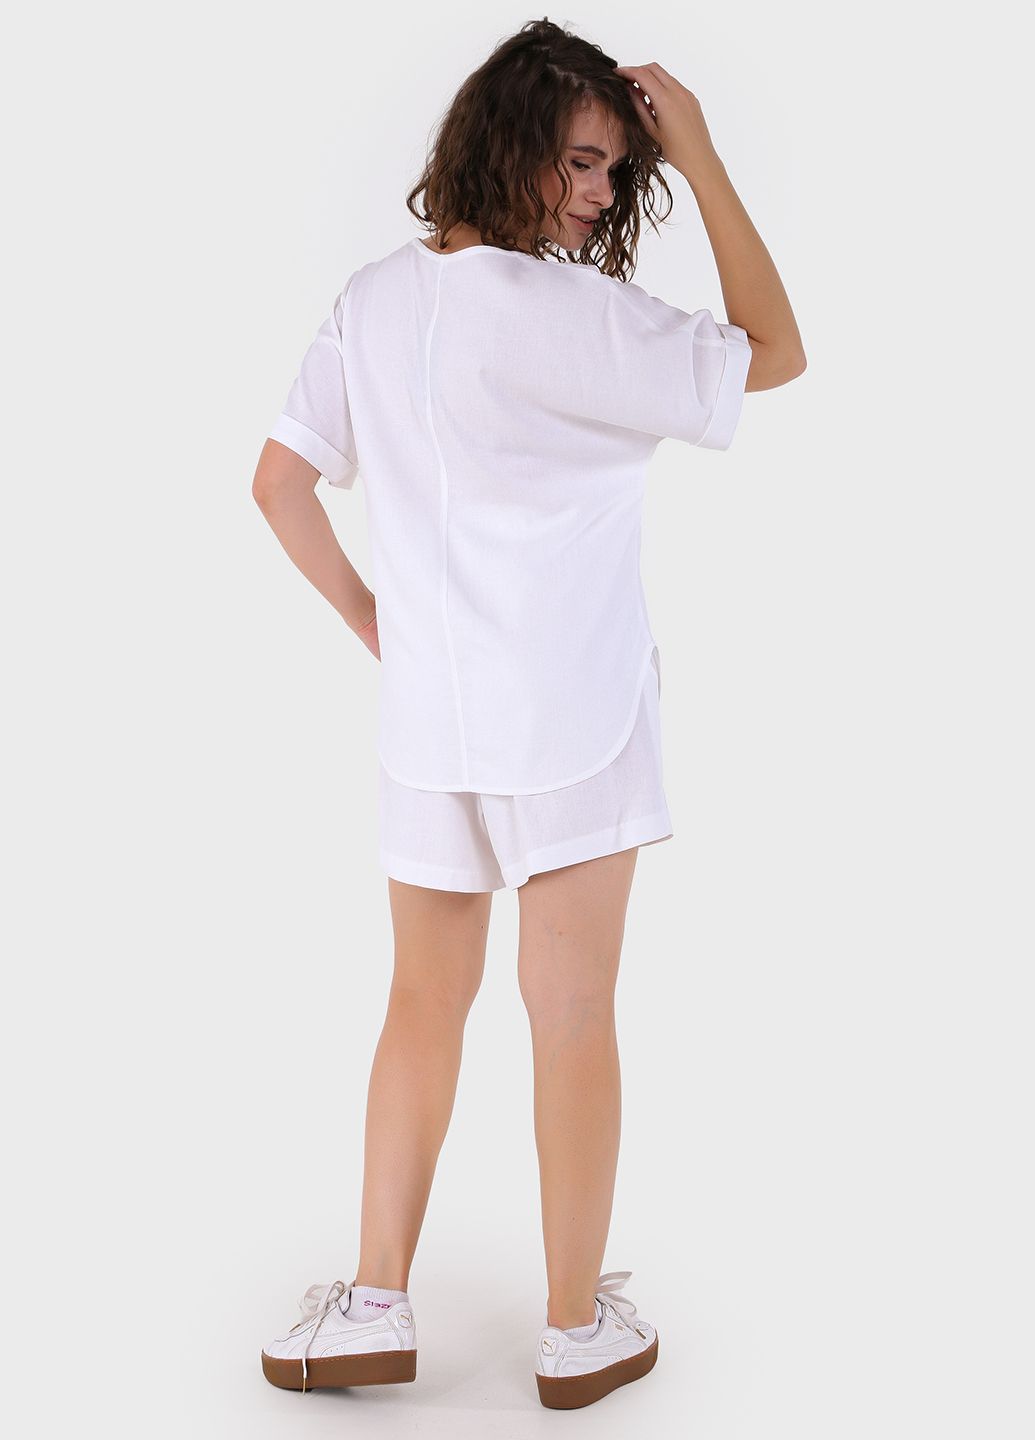 Купить Льняные шорты женские бермуды белого цвета Merlini Турин 300000045, размер 42-44 в интернет-магазине